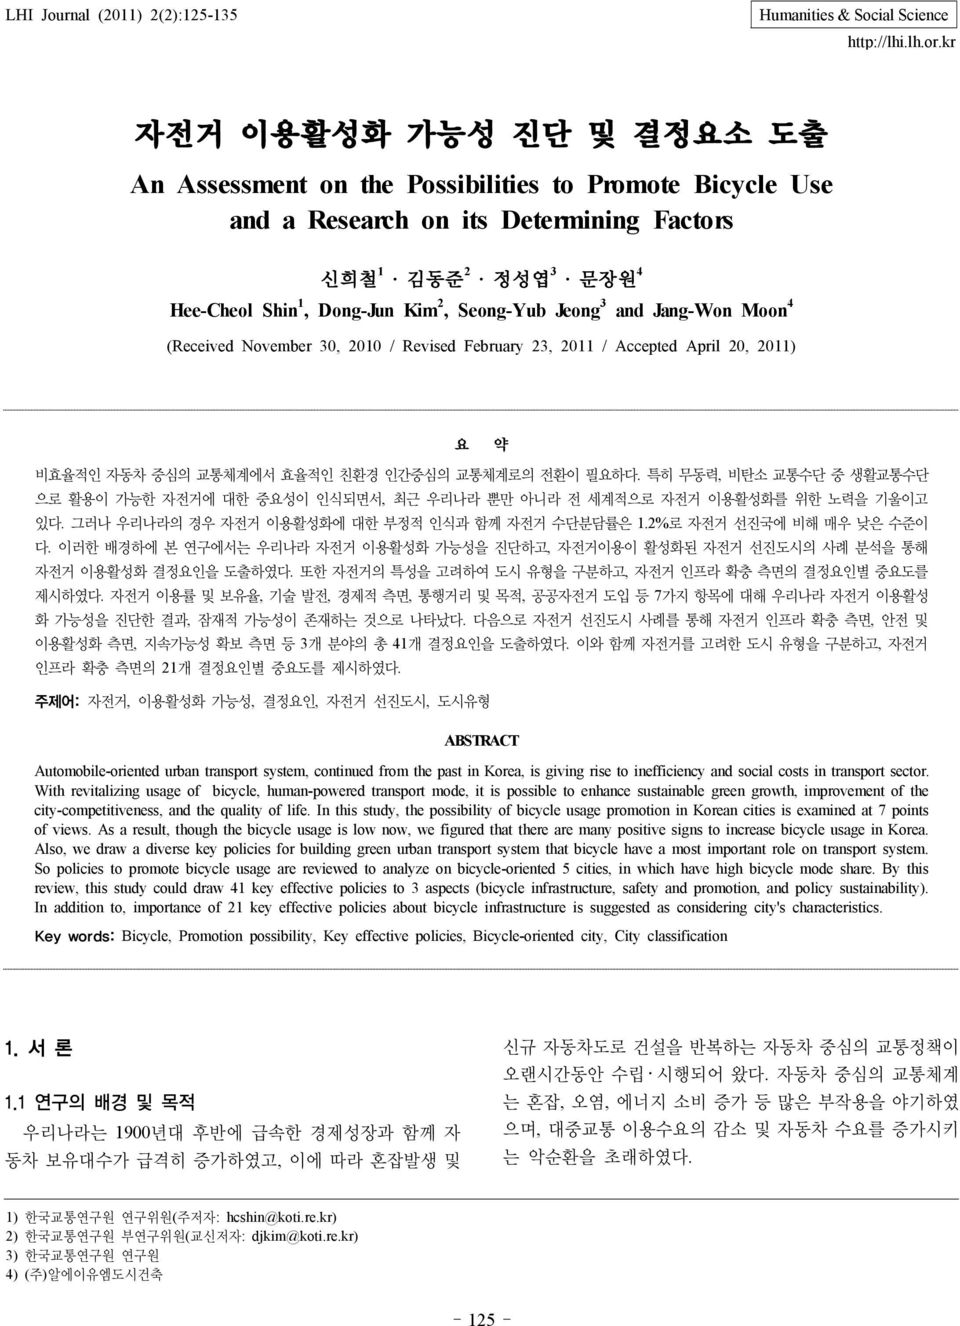 Jeong 3 and Jang-Won Moon 4 (Received November 30, 2010 / Revised February 23, 2011 / Accepted April 20, 2011) 요 약 비효율적인 자동차 중심의 교통체계에서 효율적인 친환경 인간중심의 교통체계로의 전환이 필요하다.